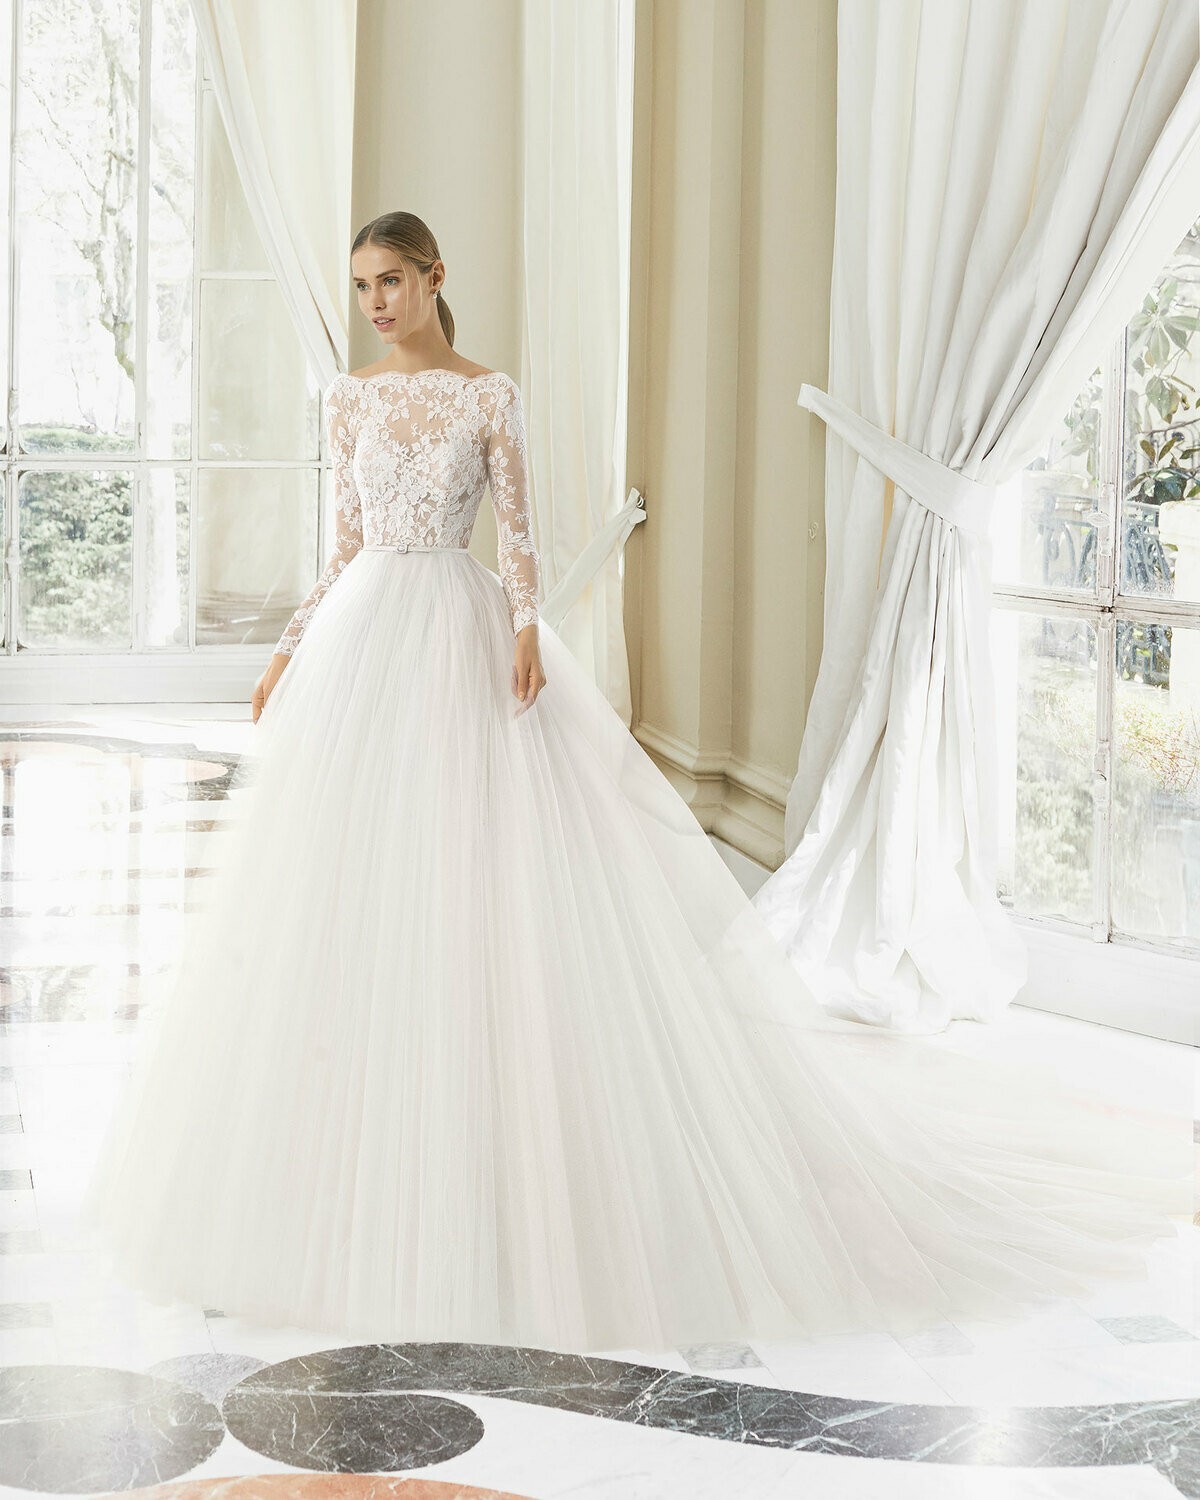 NIHER - abito da sposa collezione 2020 - Rosa Clarà Couture